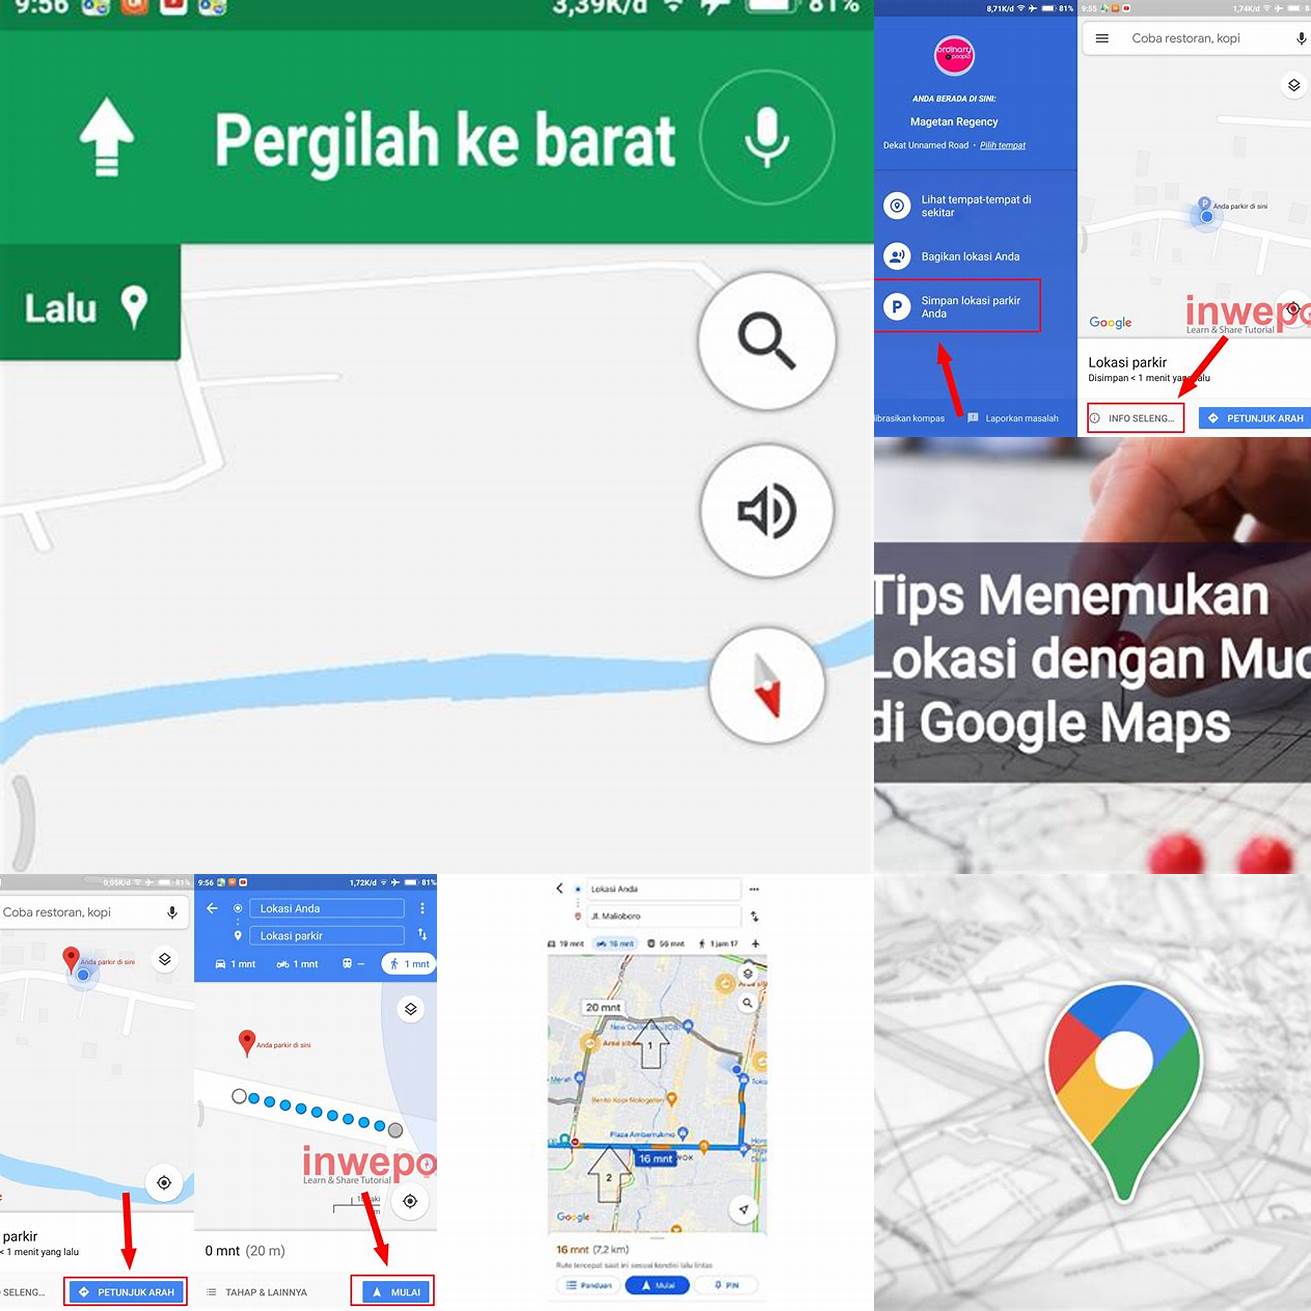 1 Gunakan Google Maps untuk menemukan lokasi orang tersebut